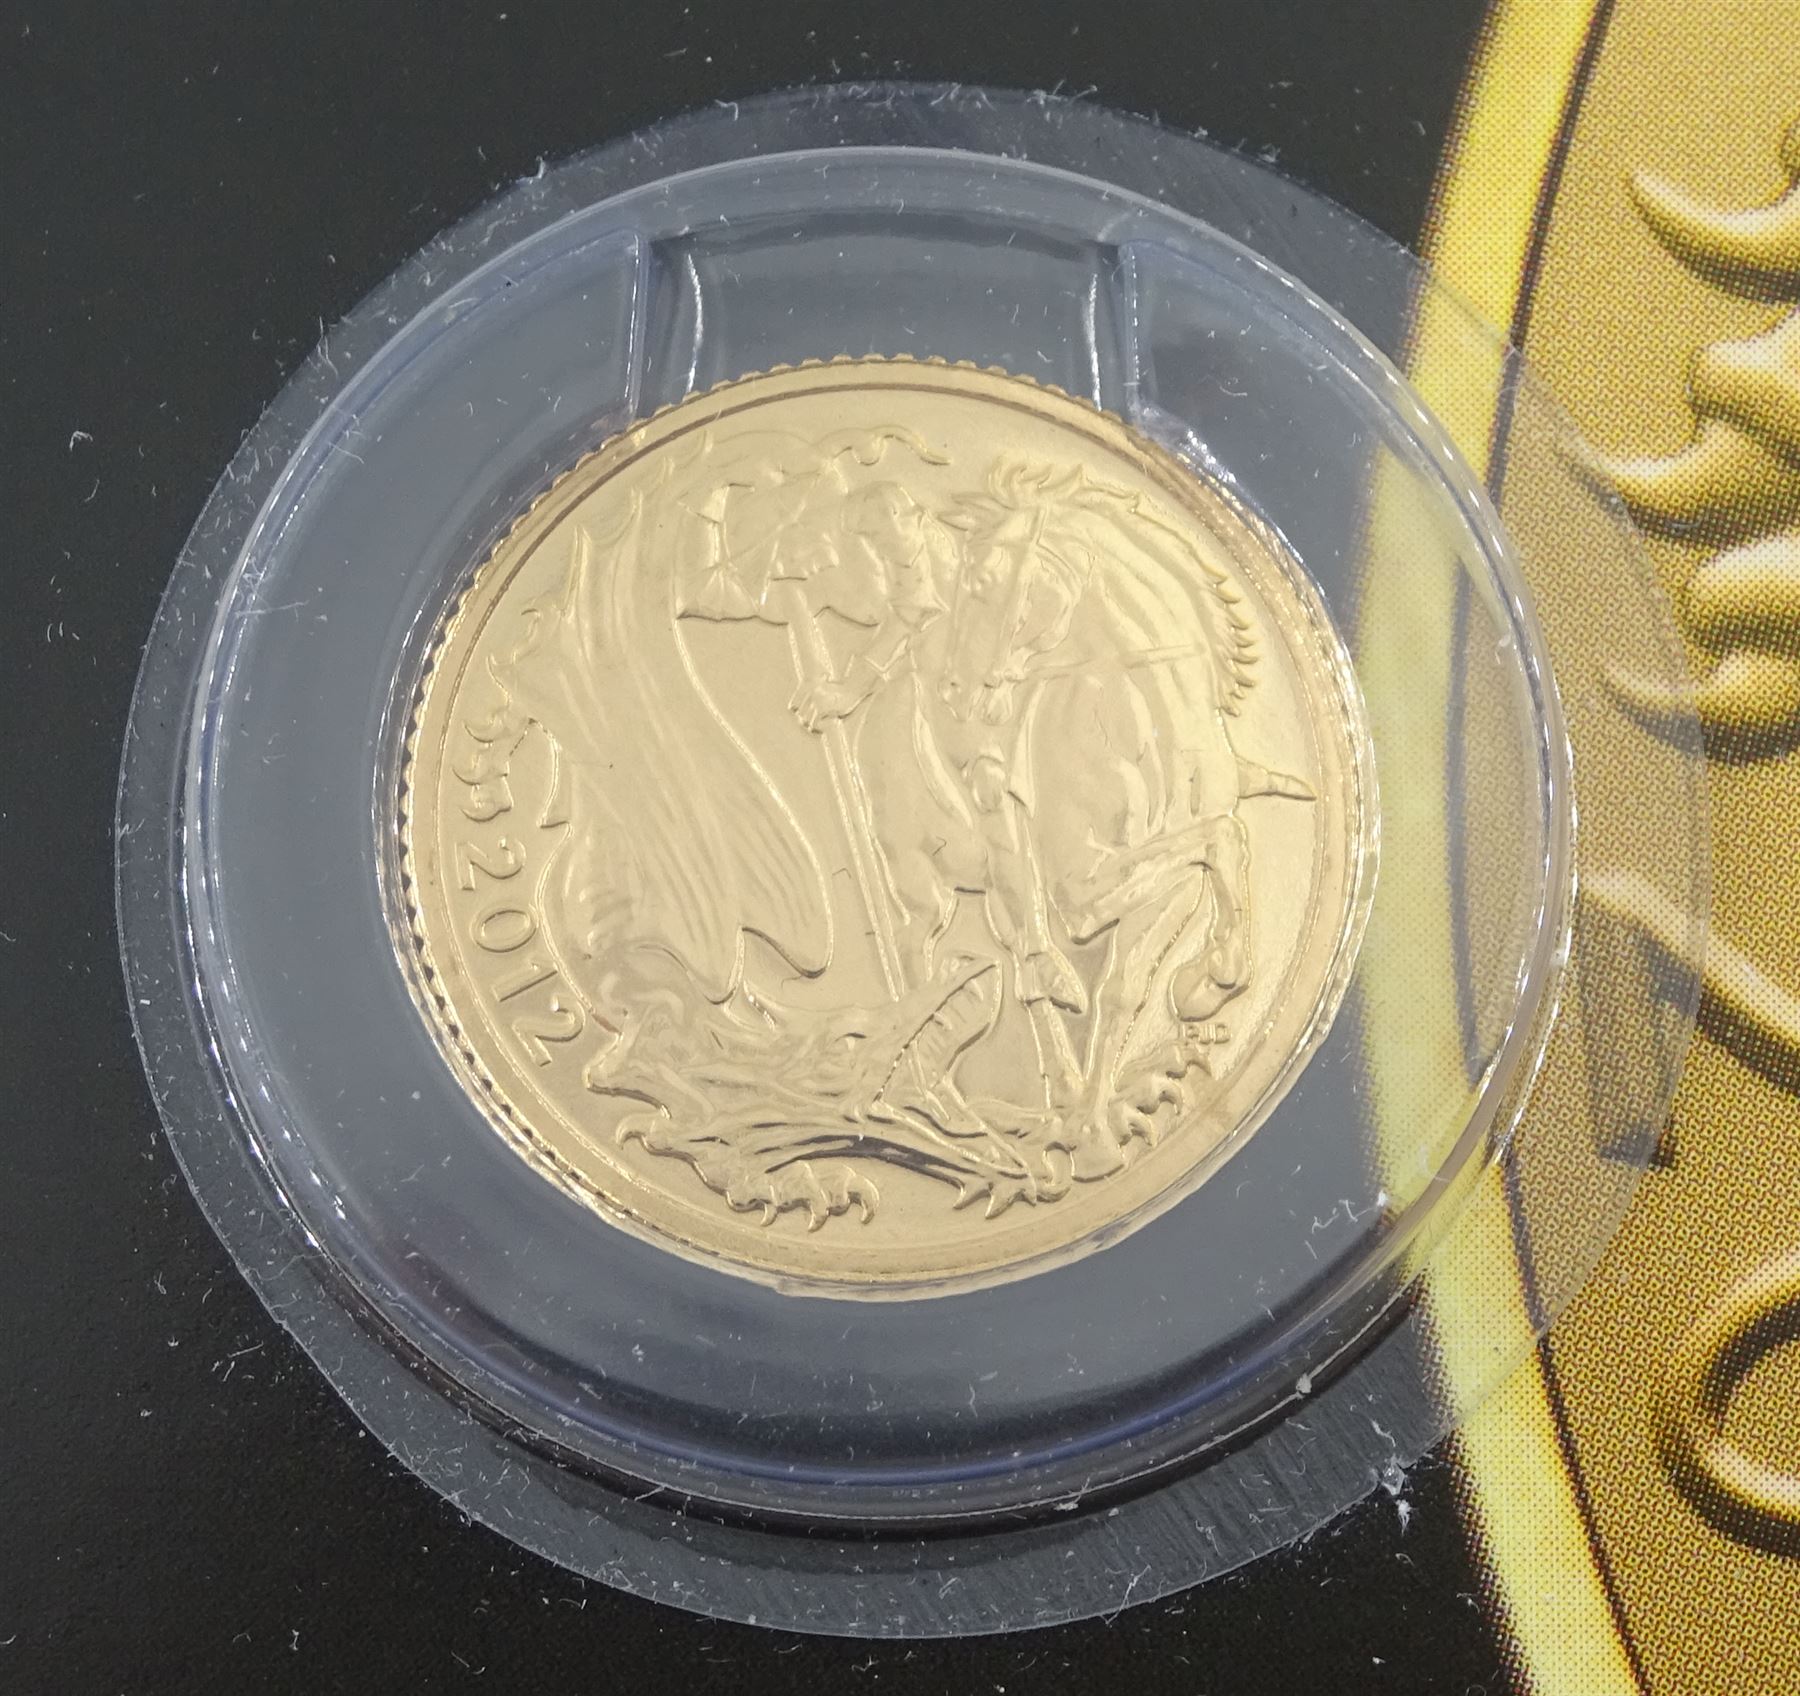 Queen Elizabeth II 2012 gold half sovereign coin celebrating The Queen's Diamond Jubilee - Image 2 of 3